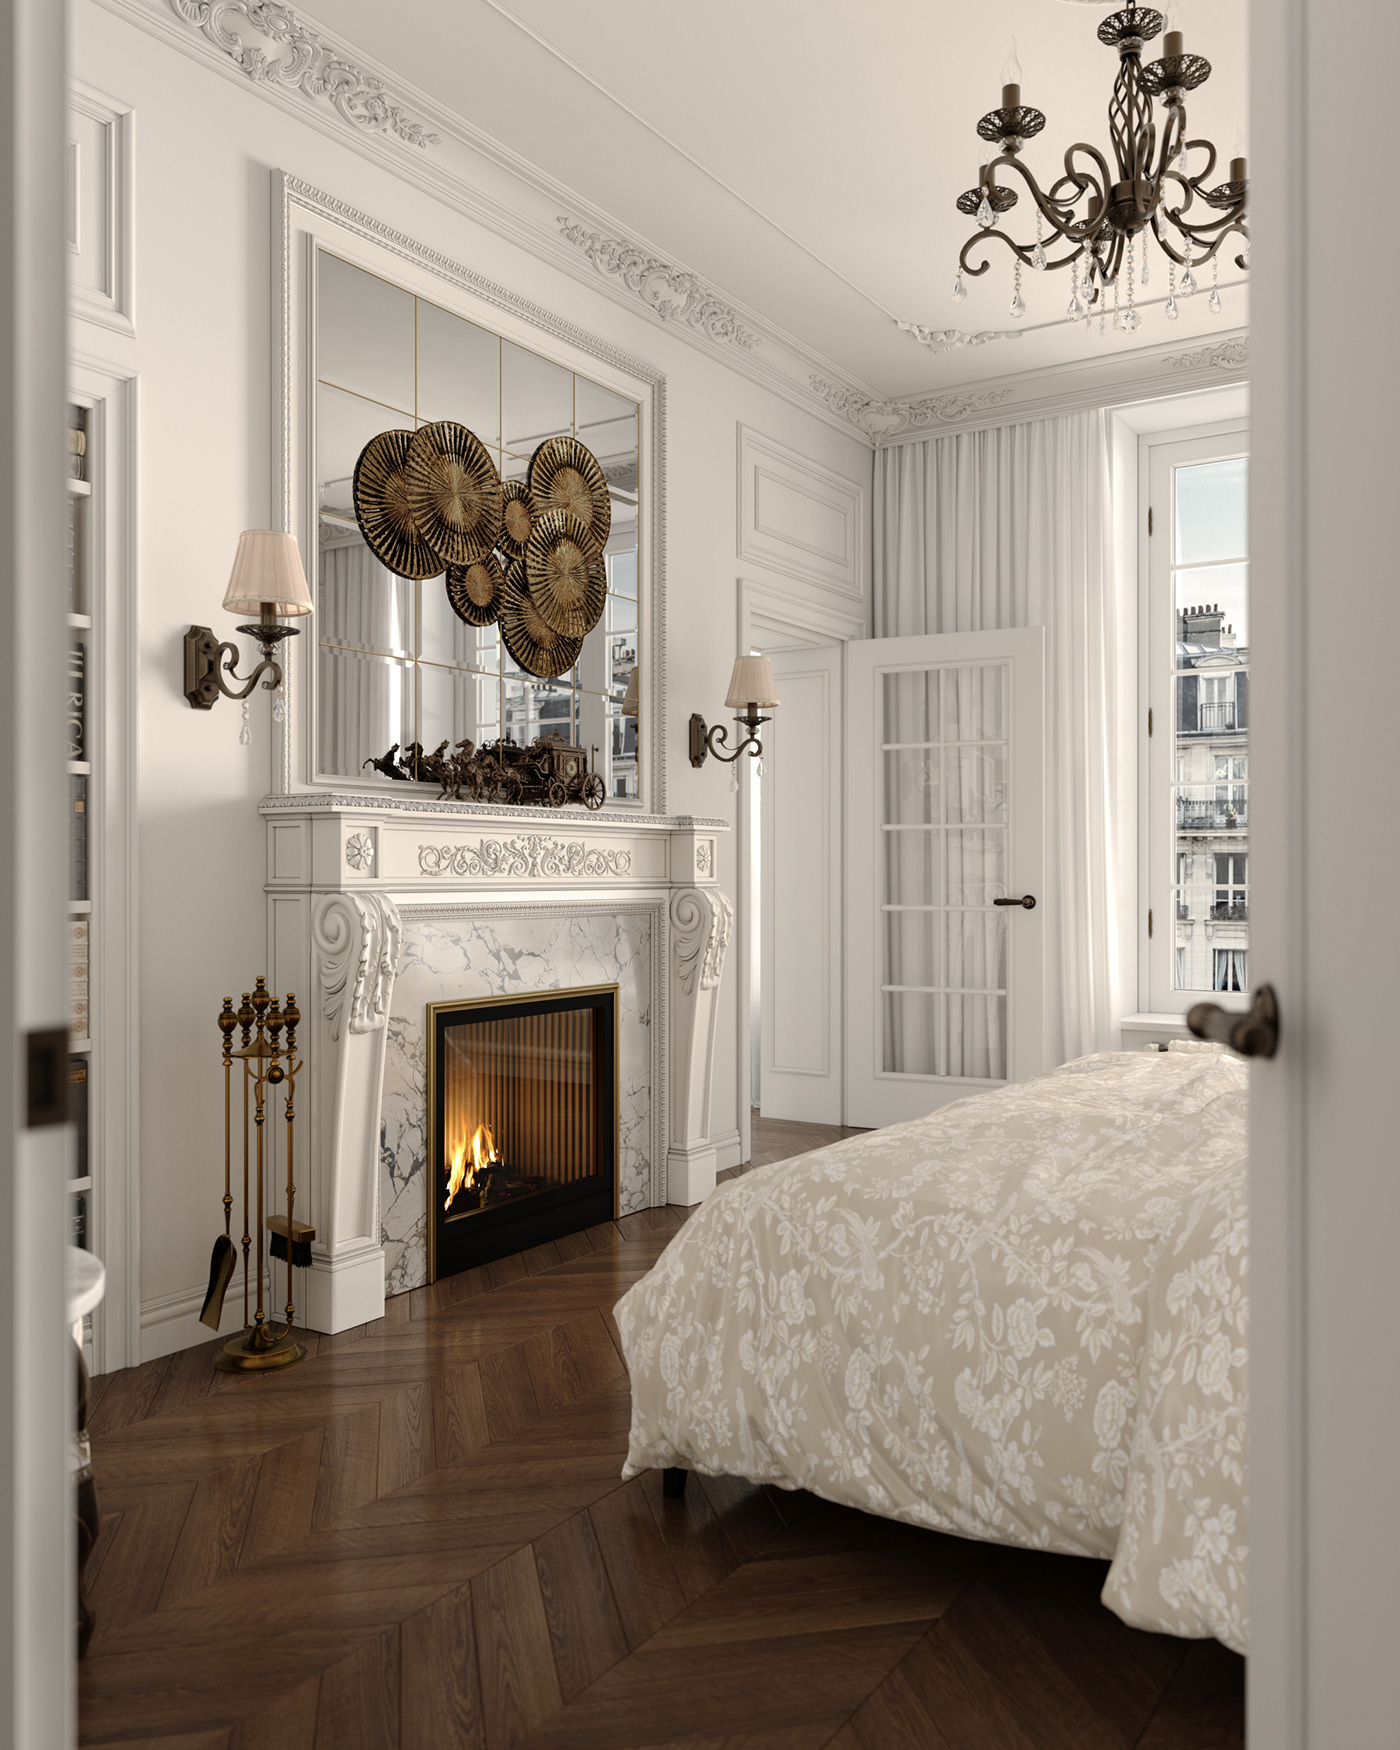 bed Interior bedroom design Bedroom interior neoclassical Classic Interior interior design  visualization Render corona